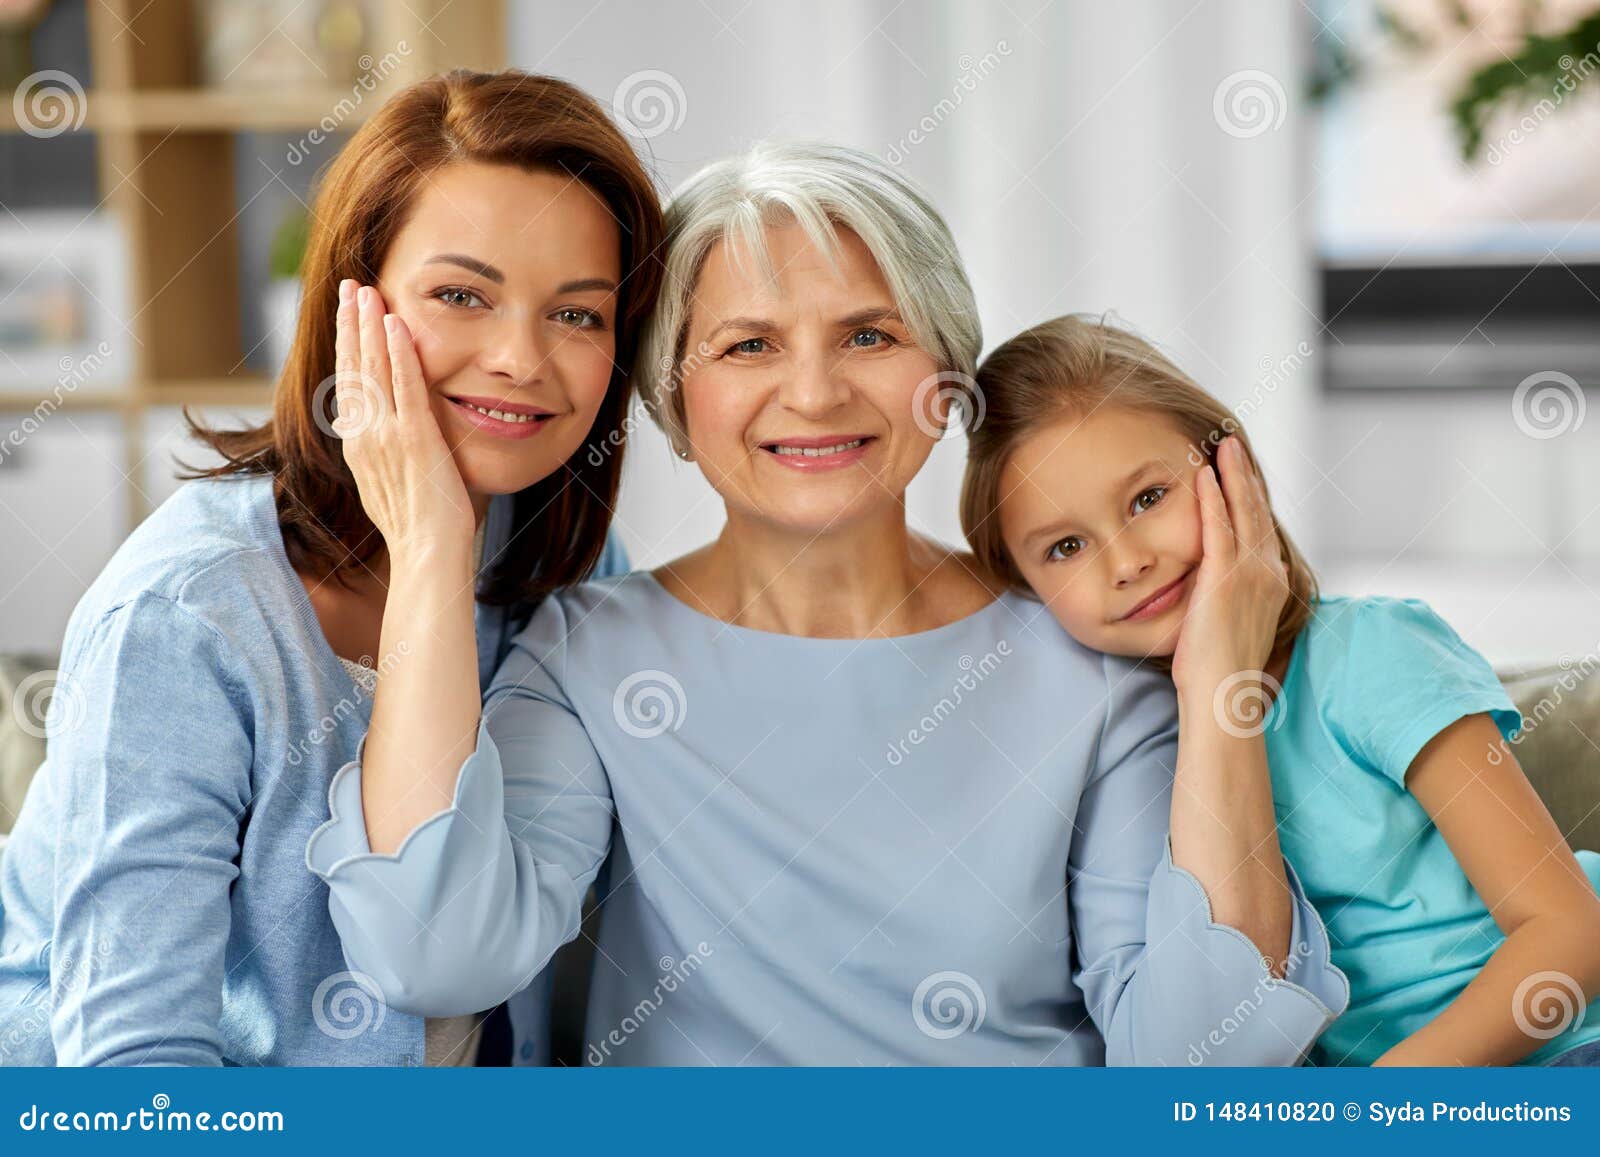 Мама и дочь веб. Поколение мама бабушка. Бабушка мама и дочка. Фотосессия бабушка мама и дочка. Мать и дочь фотопортрет.